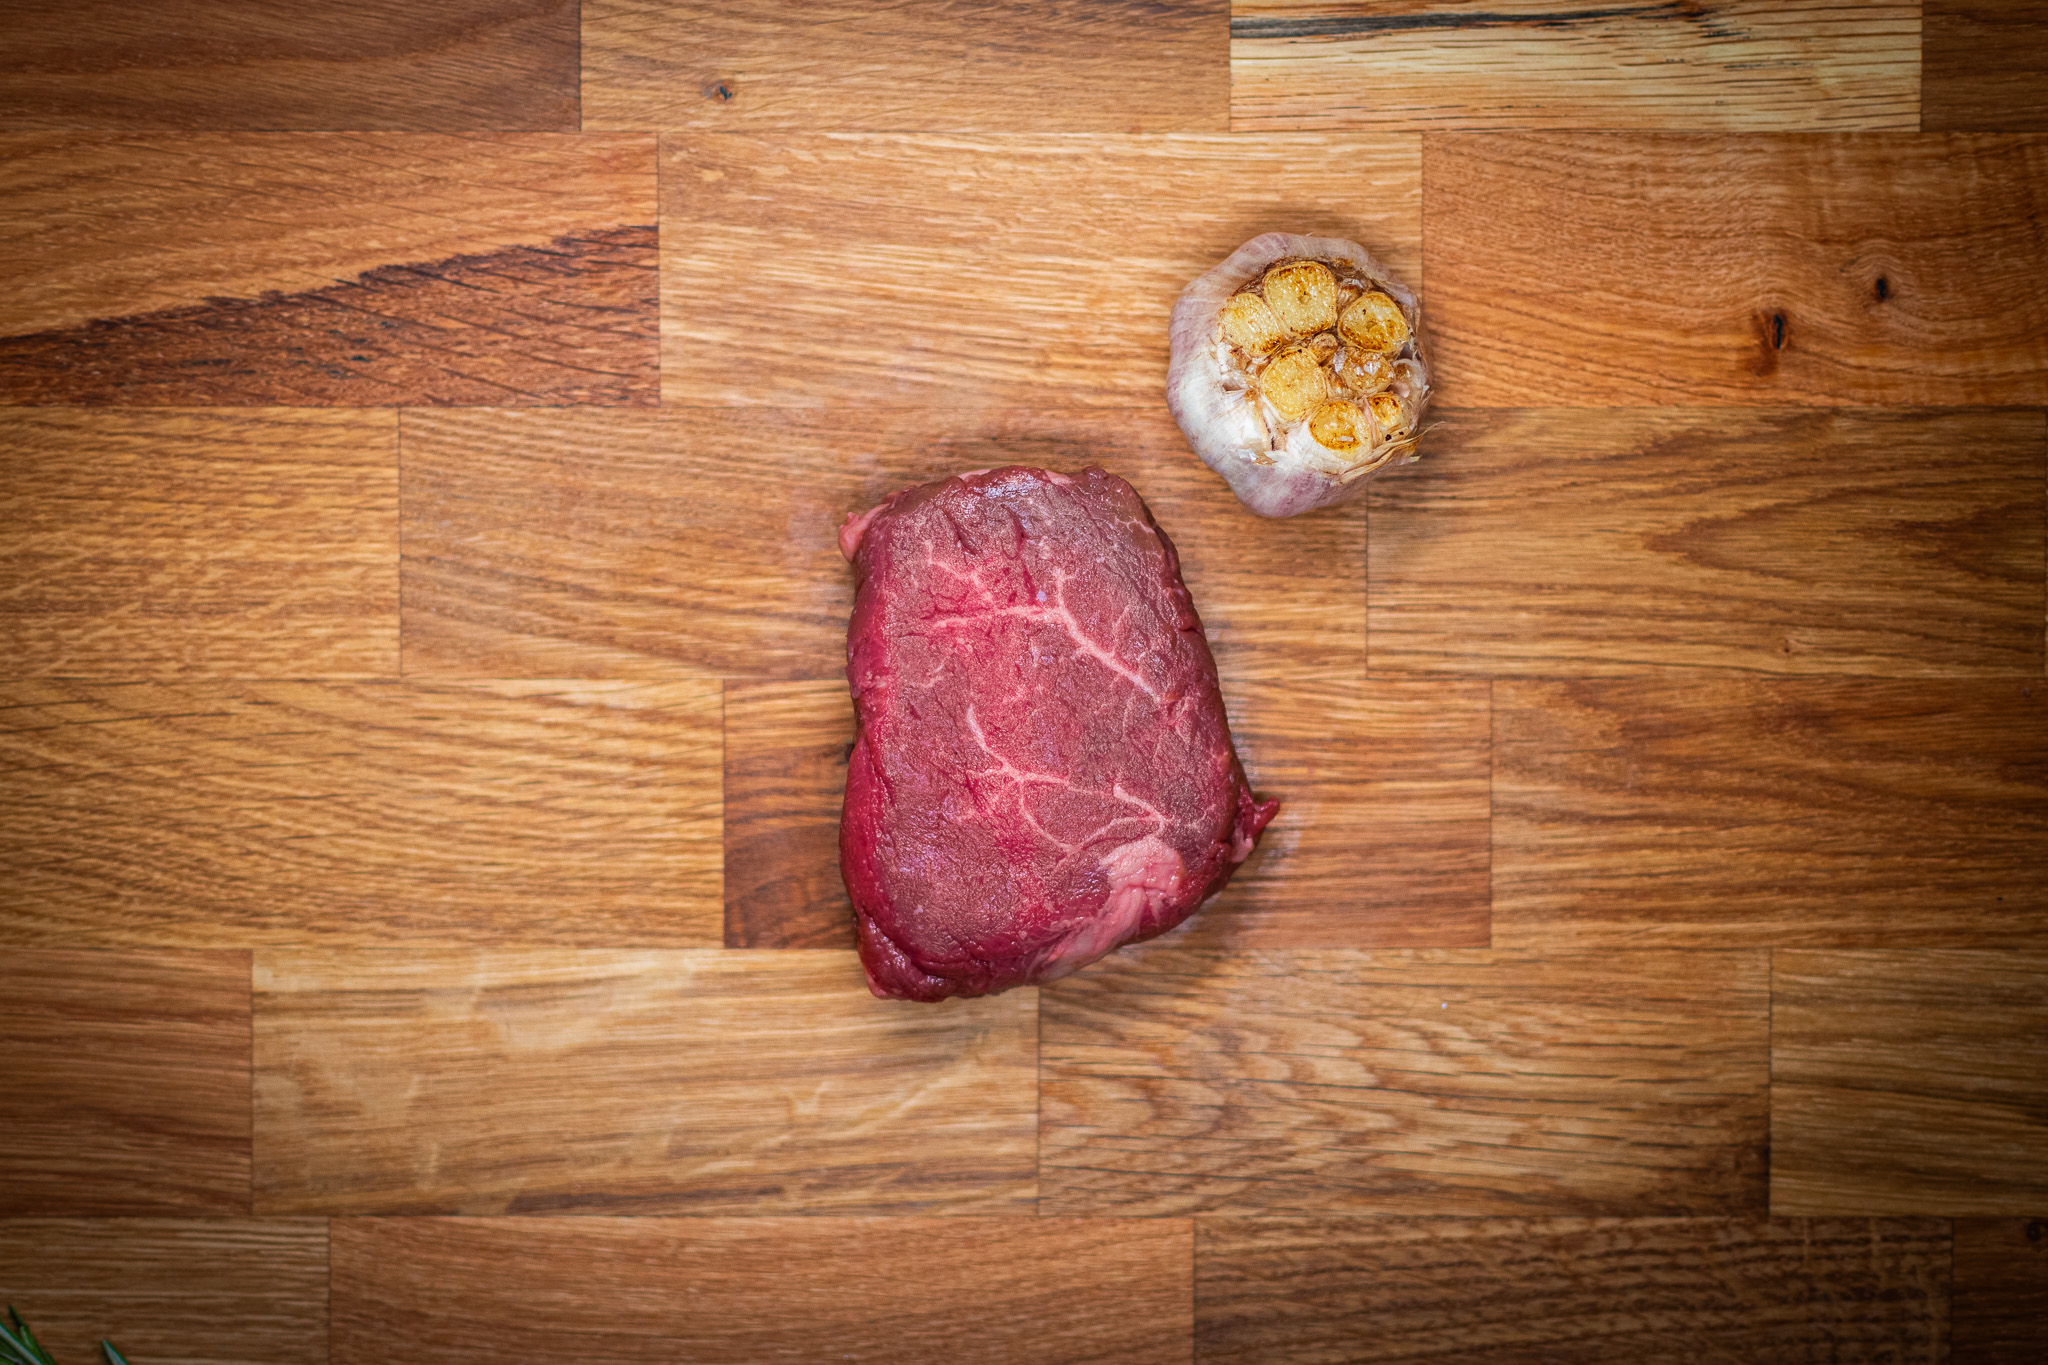 USDA Prime Beef Fillet steak